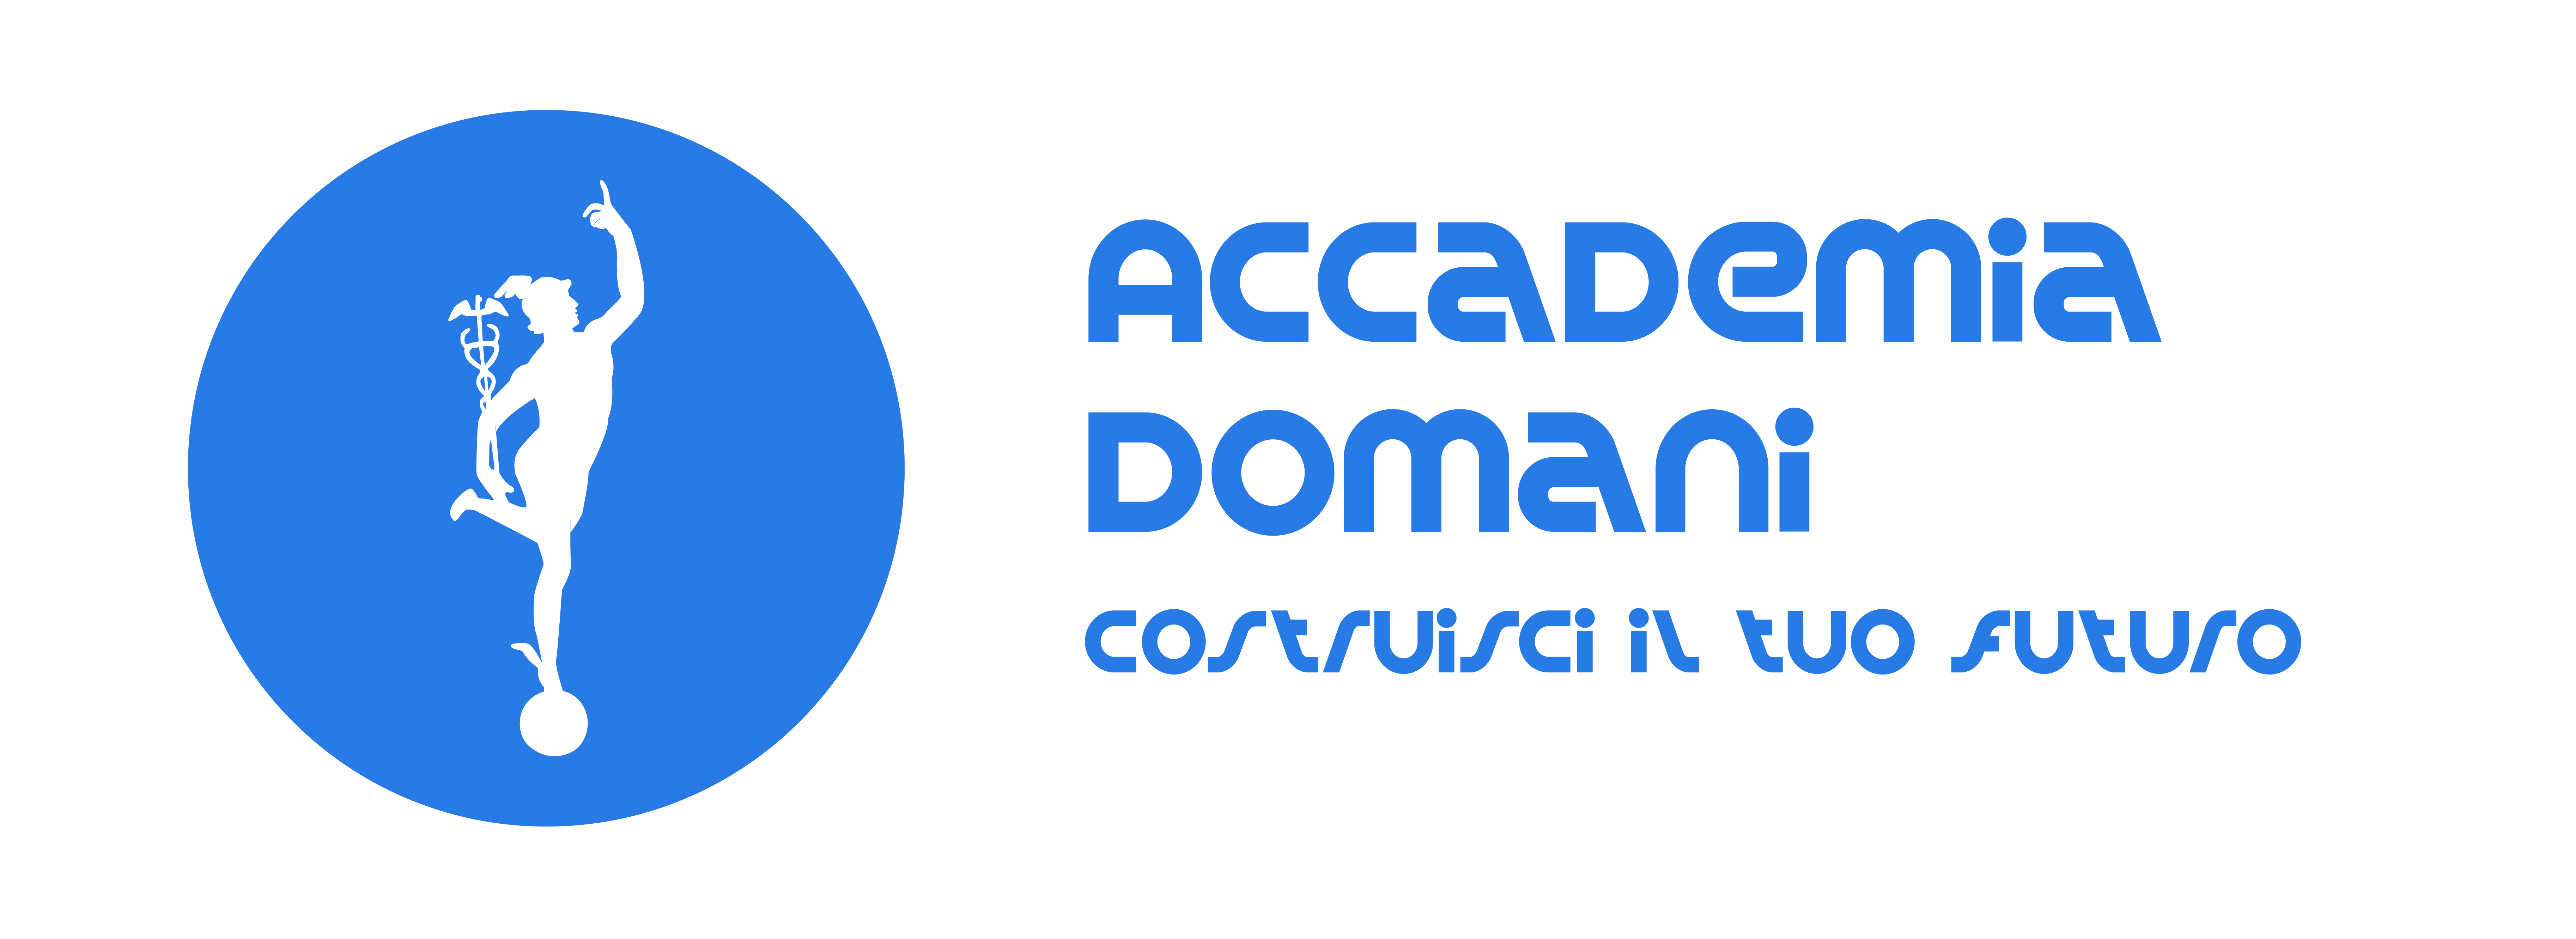 Piattaforma Accademia Domani